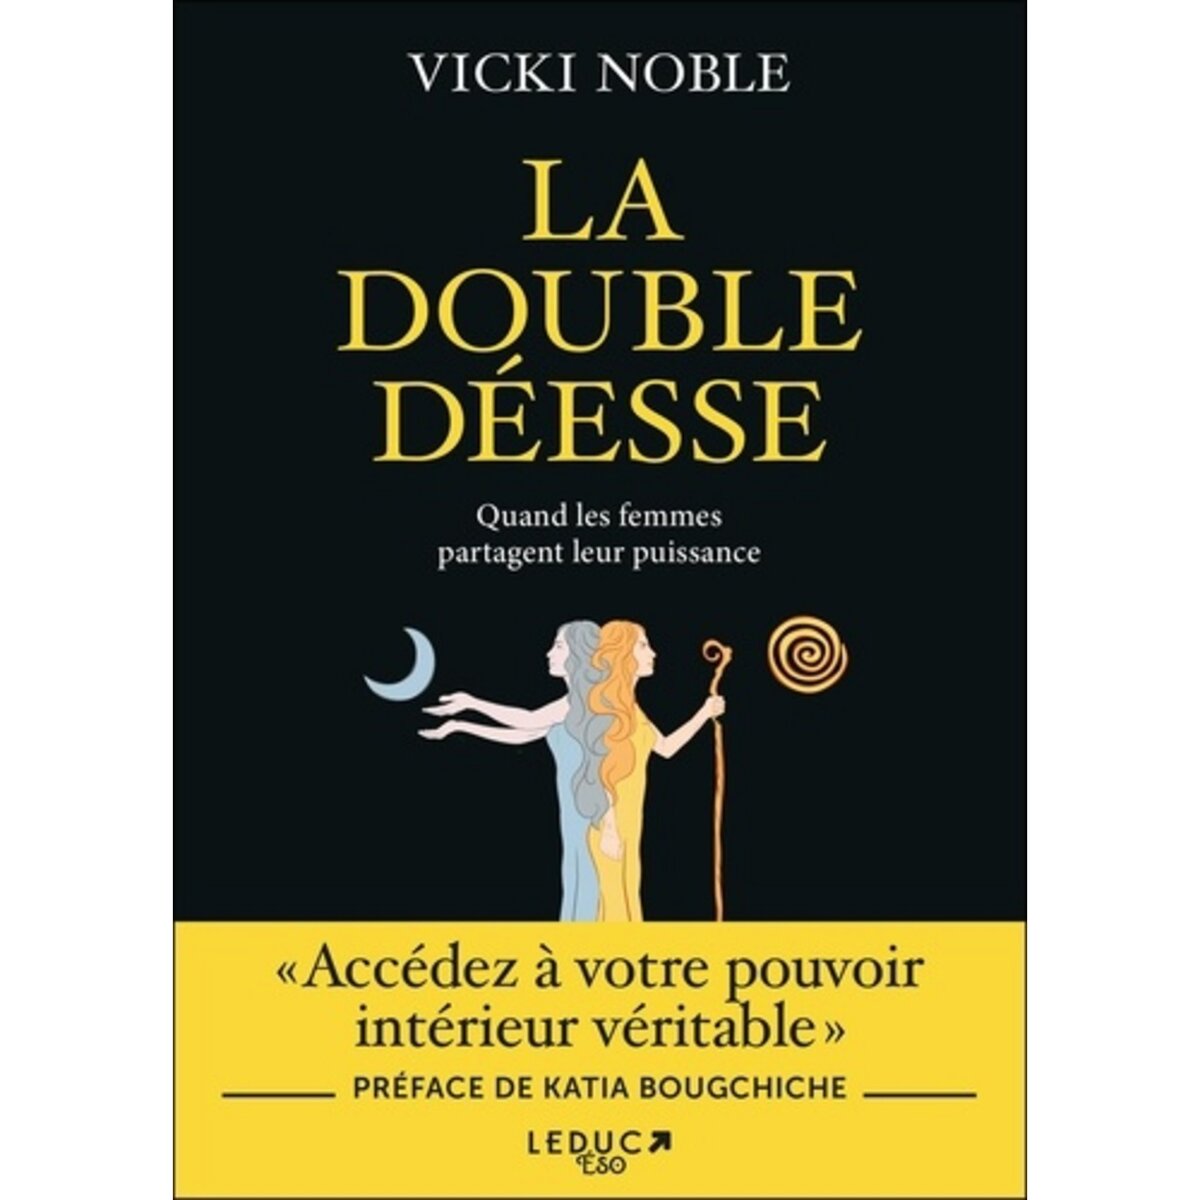  LA DOUBLE DEESSE. QUAND LES FEMMES PARTAGENT LEUR PUISSANCE, Noble Vicki